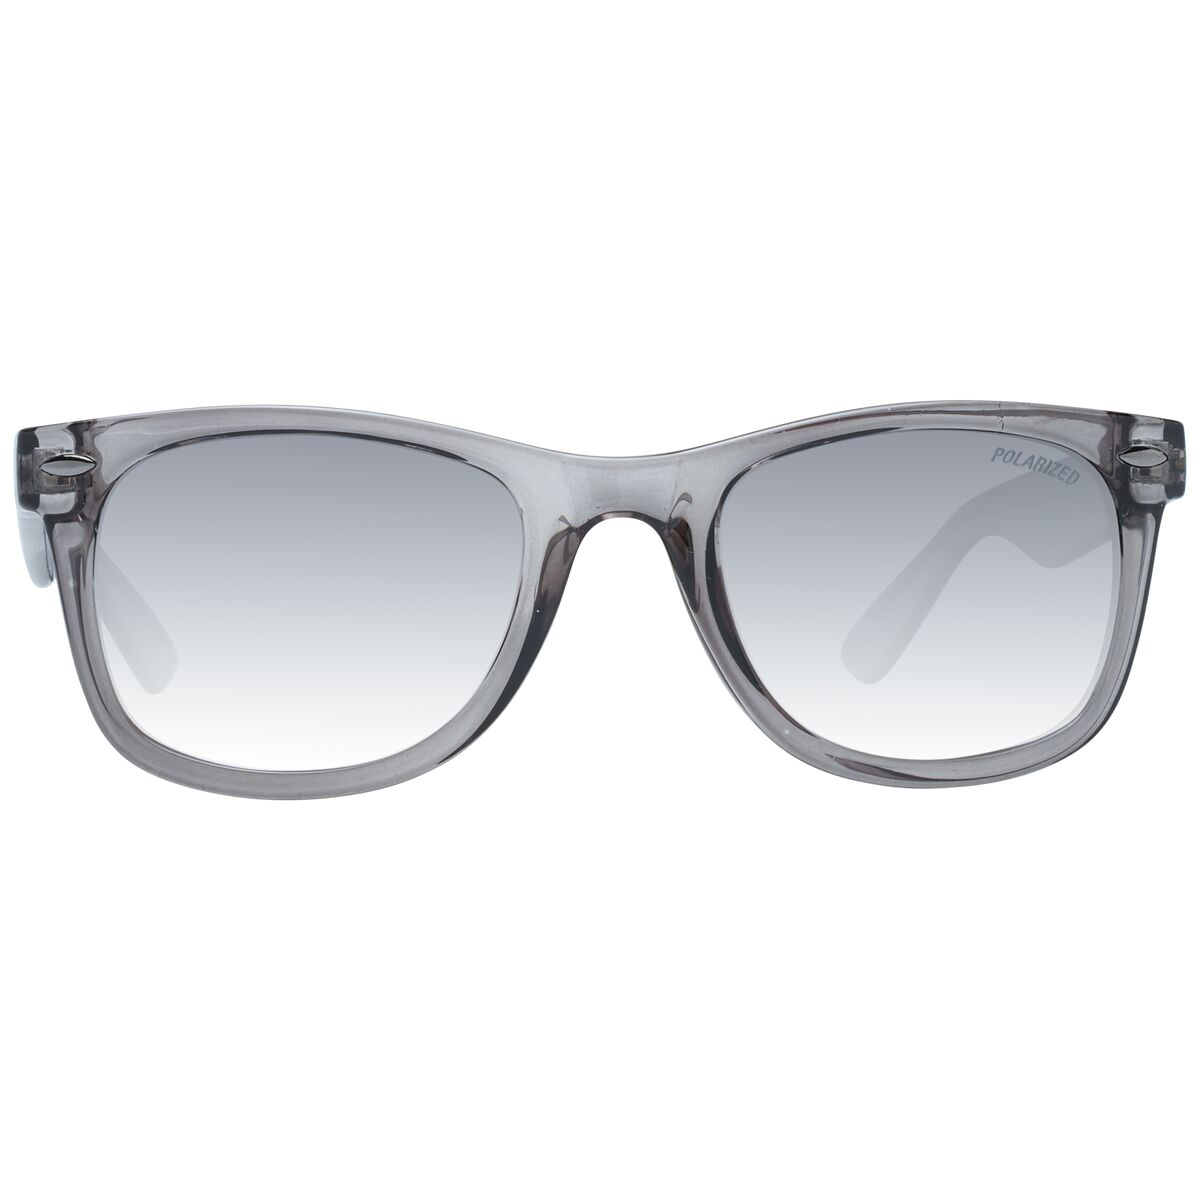 Kaufe Herrensonnenbrille Skechers SE6216 5120D bei AWK Flagship um € 56.00